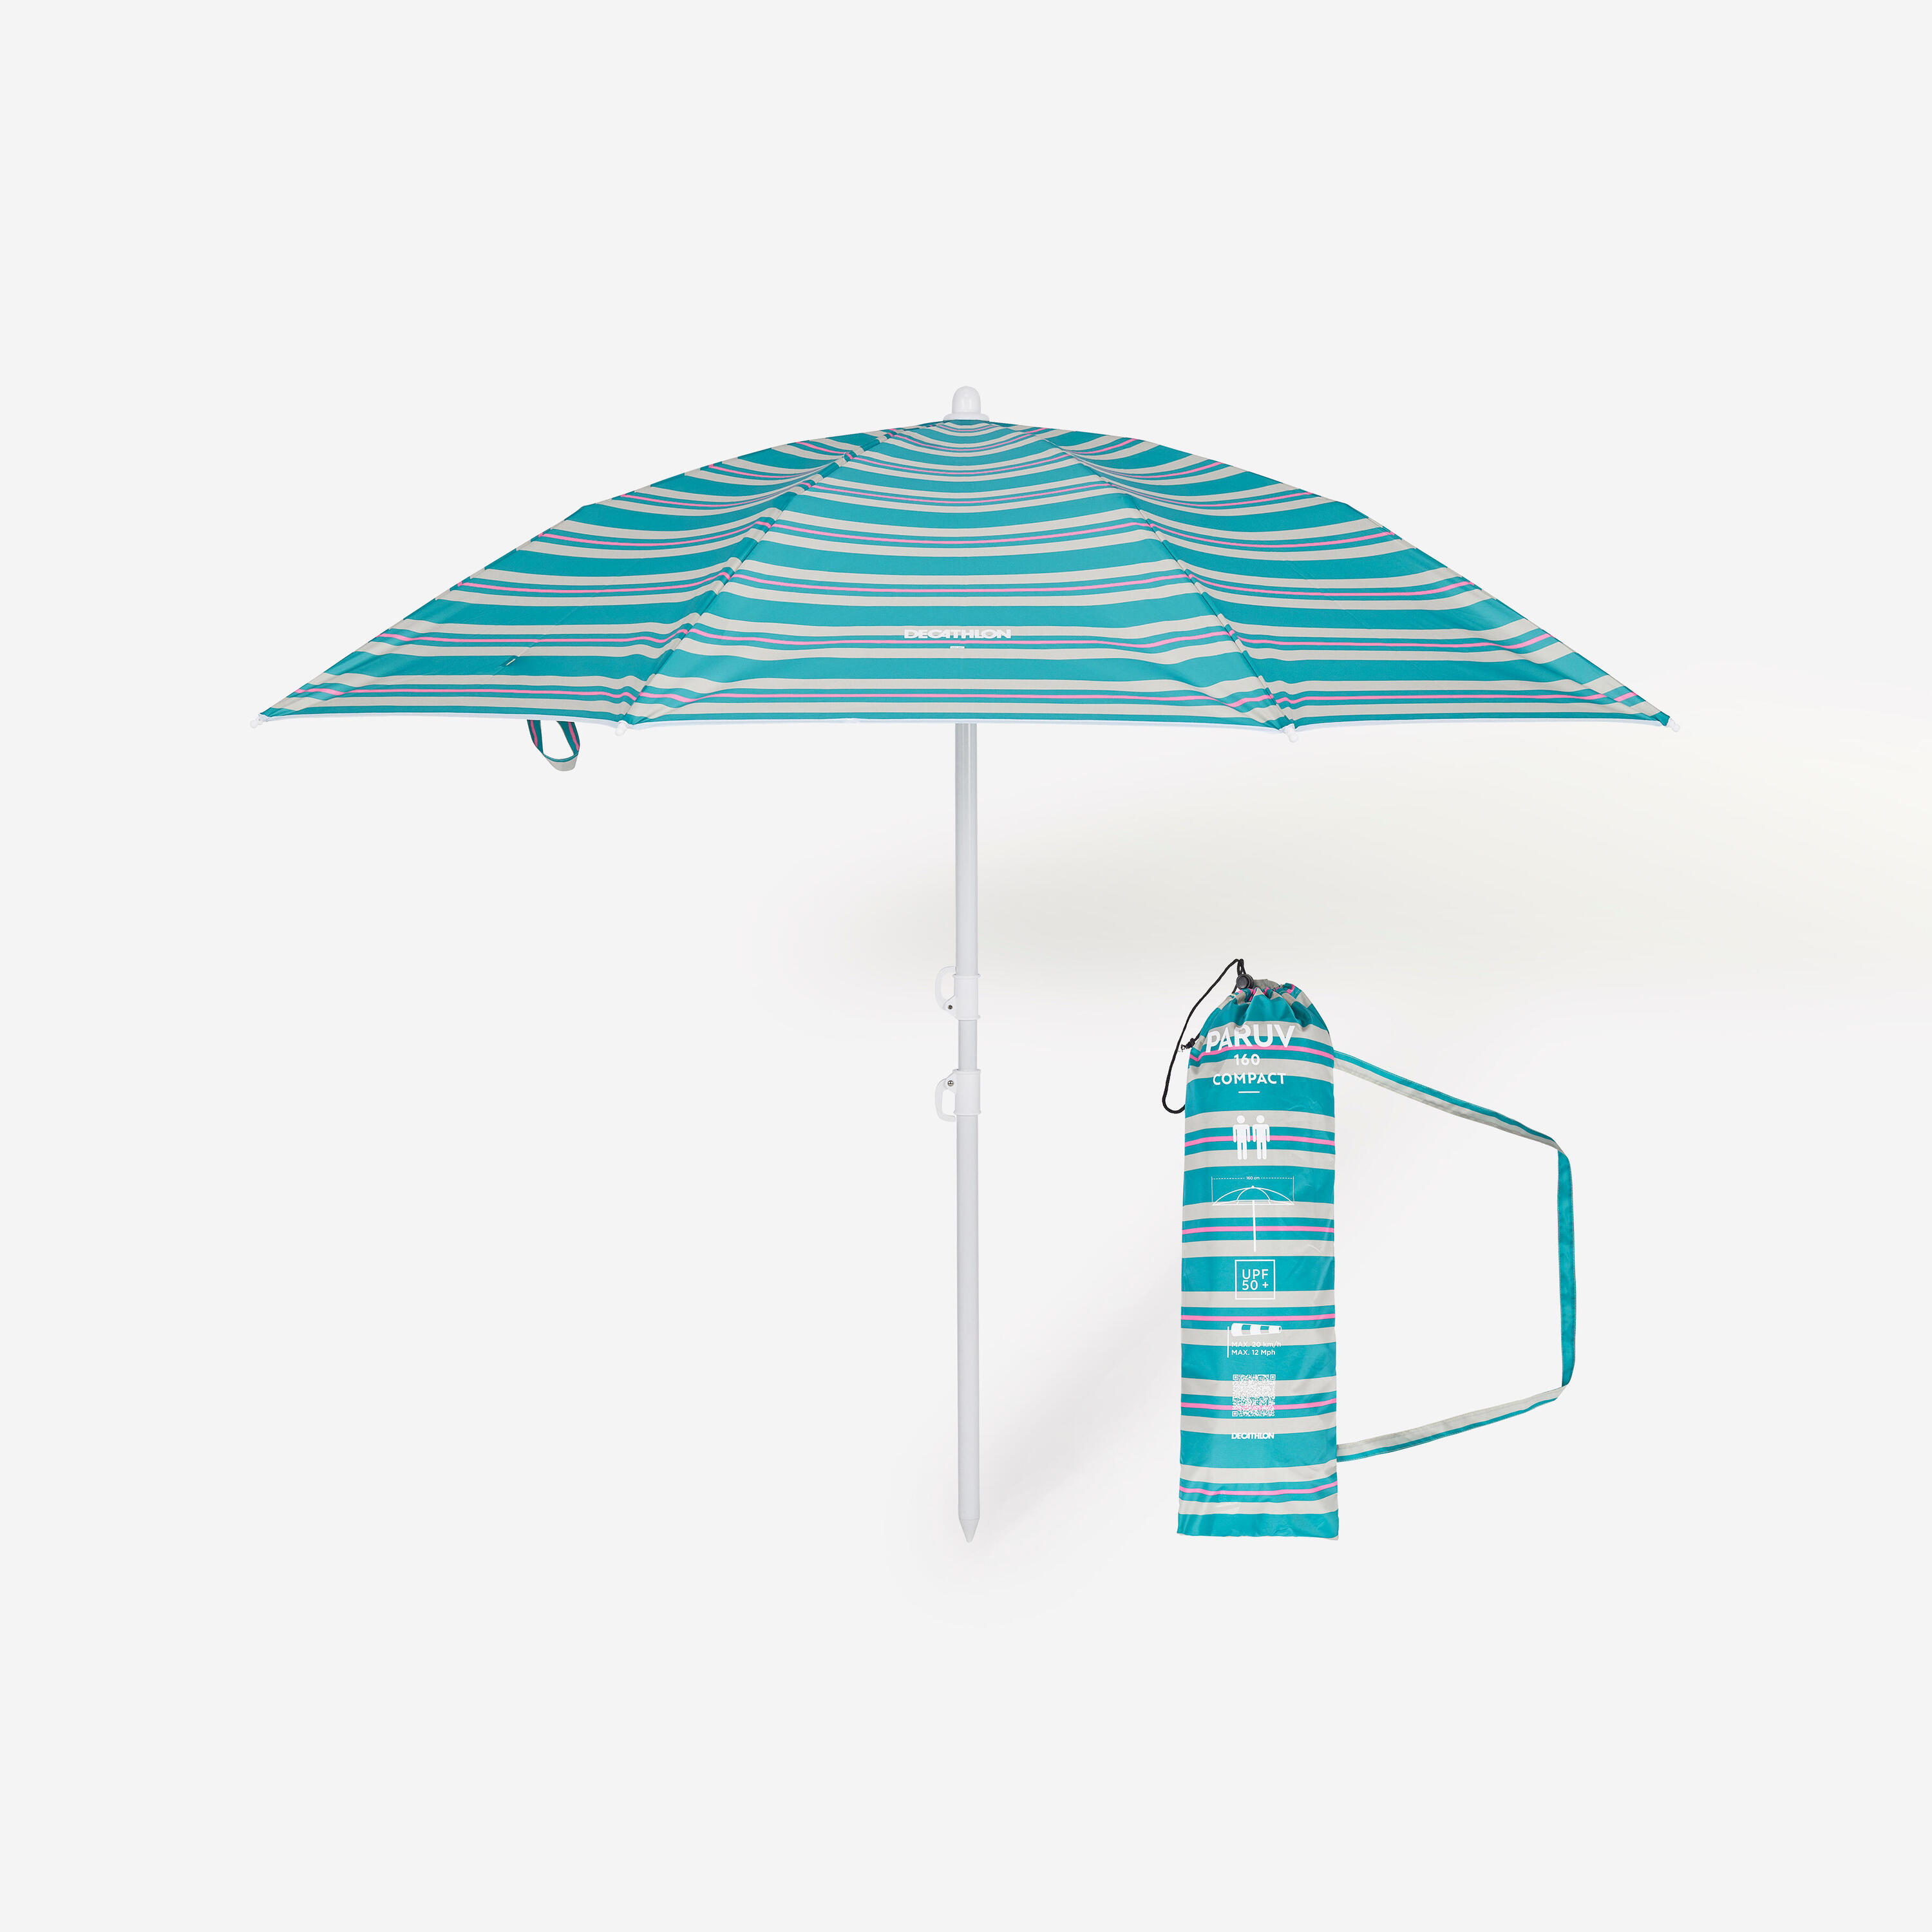 DECATHLON Compact beach umbrella 2 person UPF 50+ - Paruv 160 green stripe